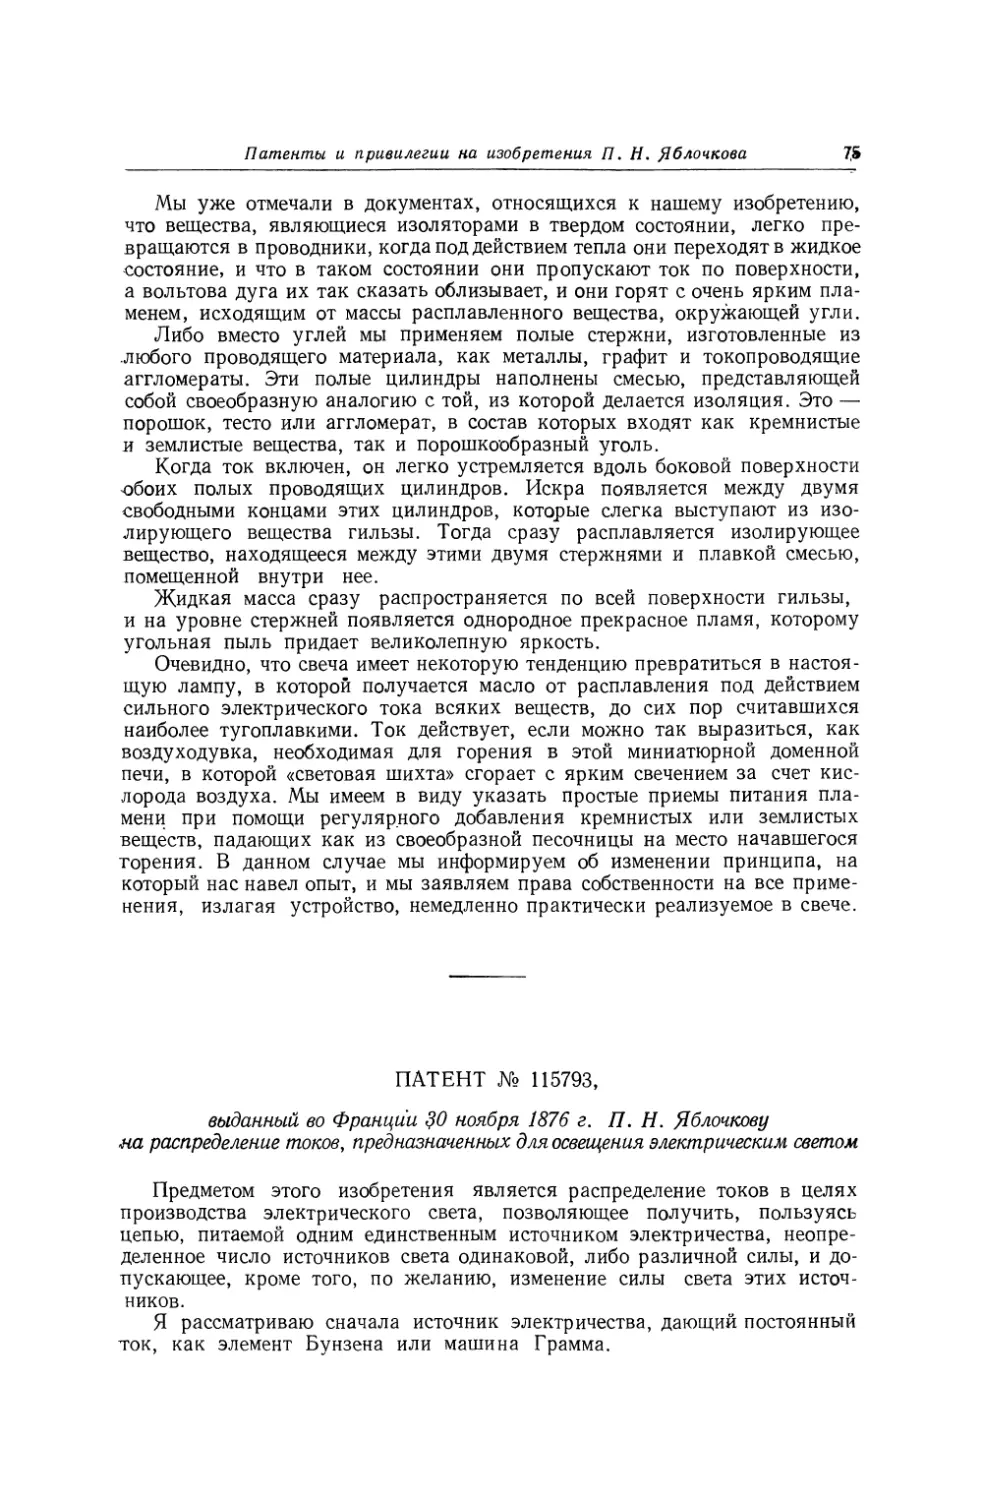 Патент № 115793, выданный во Франции 30 ноября 1876 г. П. Н. Яблочкову на распределение токов, предназначенных для освещения электрическим светом